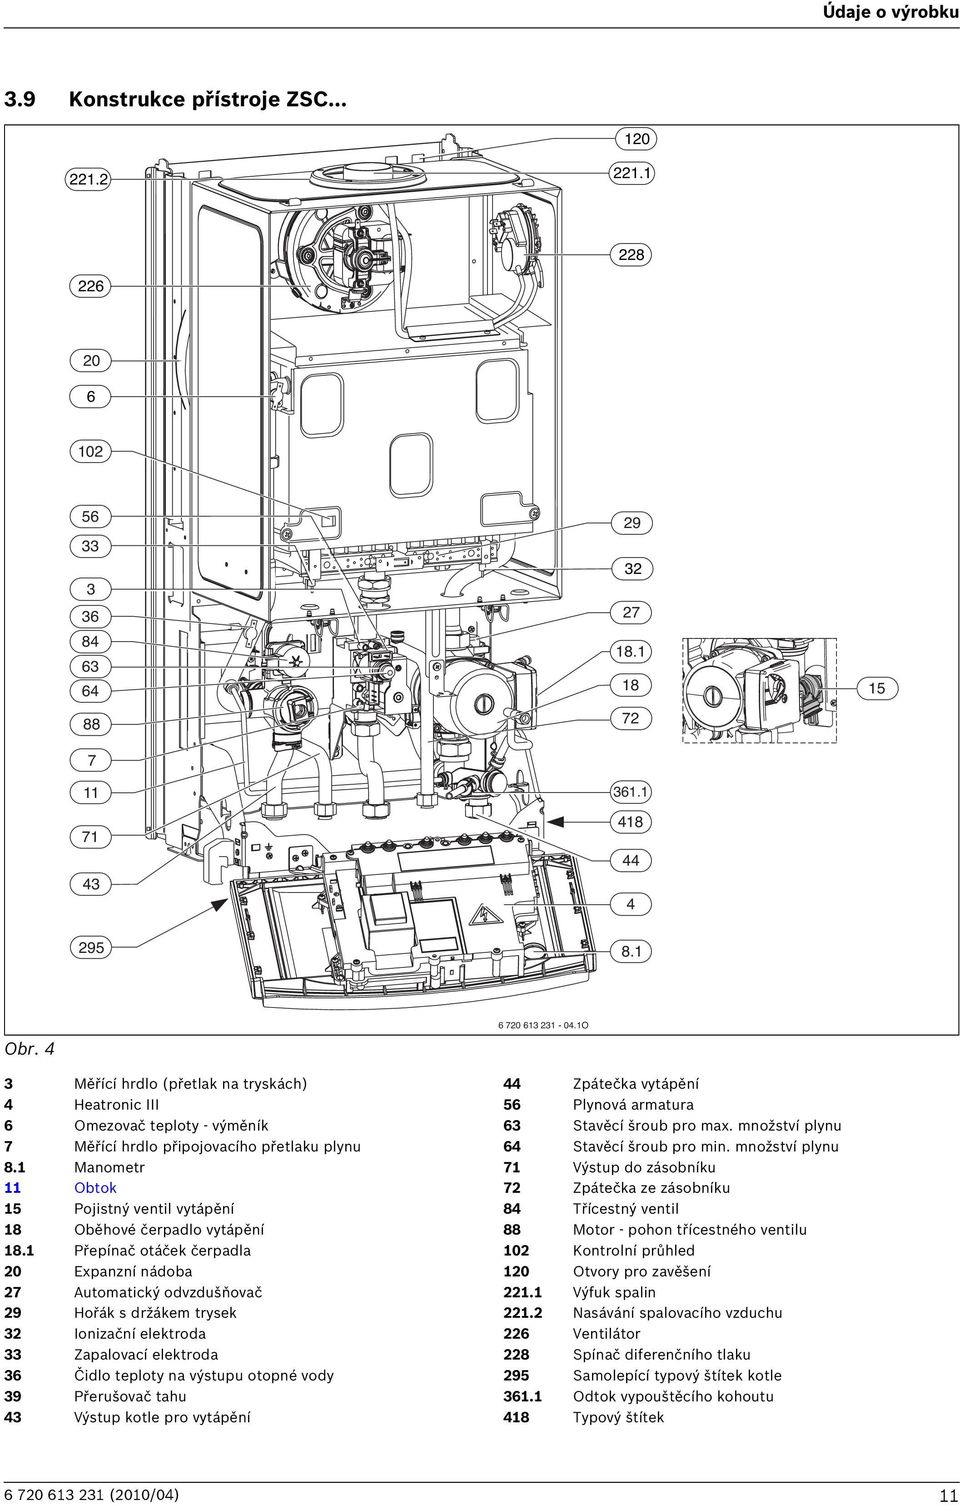 Manometr Obtok 5 Pojistný ventil vytápění 8 Oběhové čerpadlo vytápění 8.